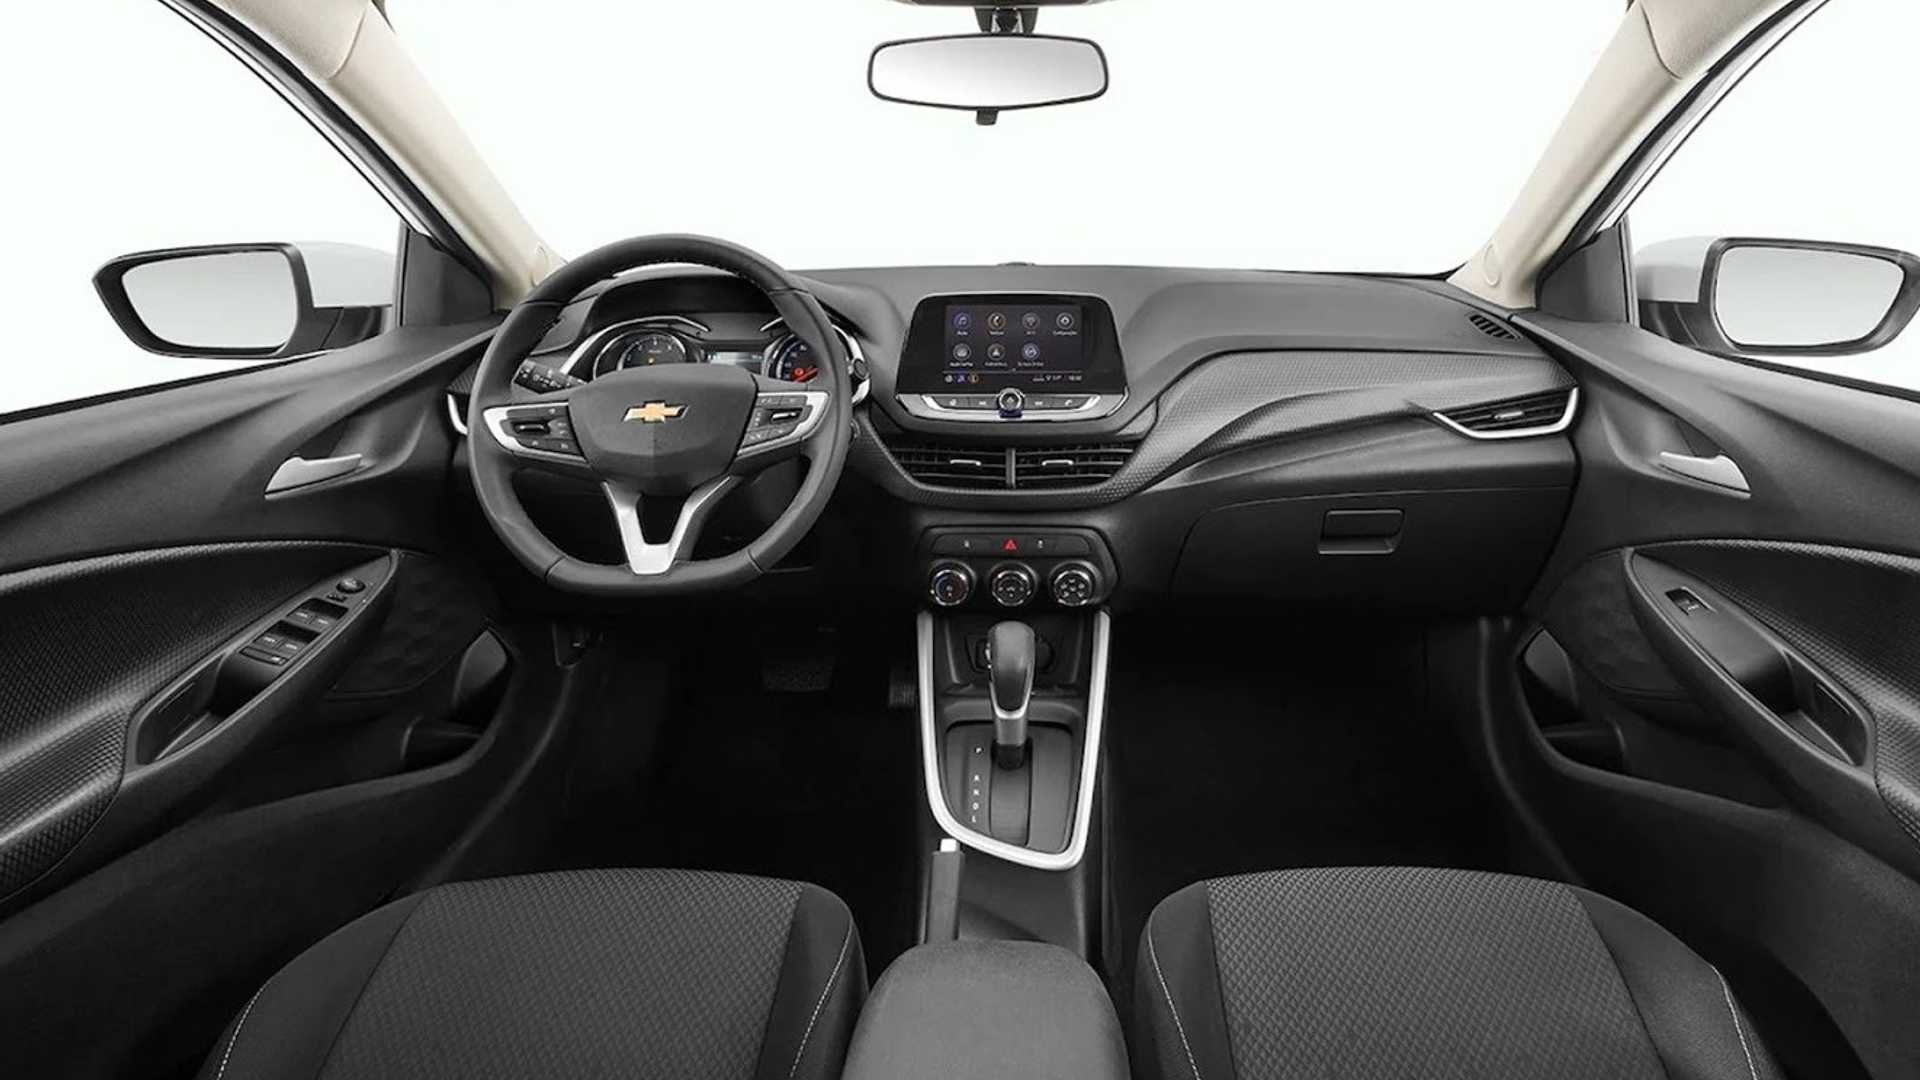 Novo Chevrolet Onix hatch está 23 cm maior